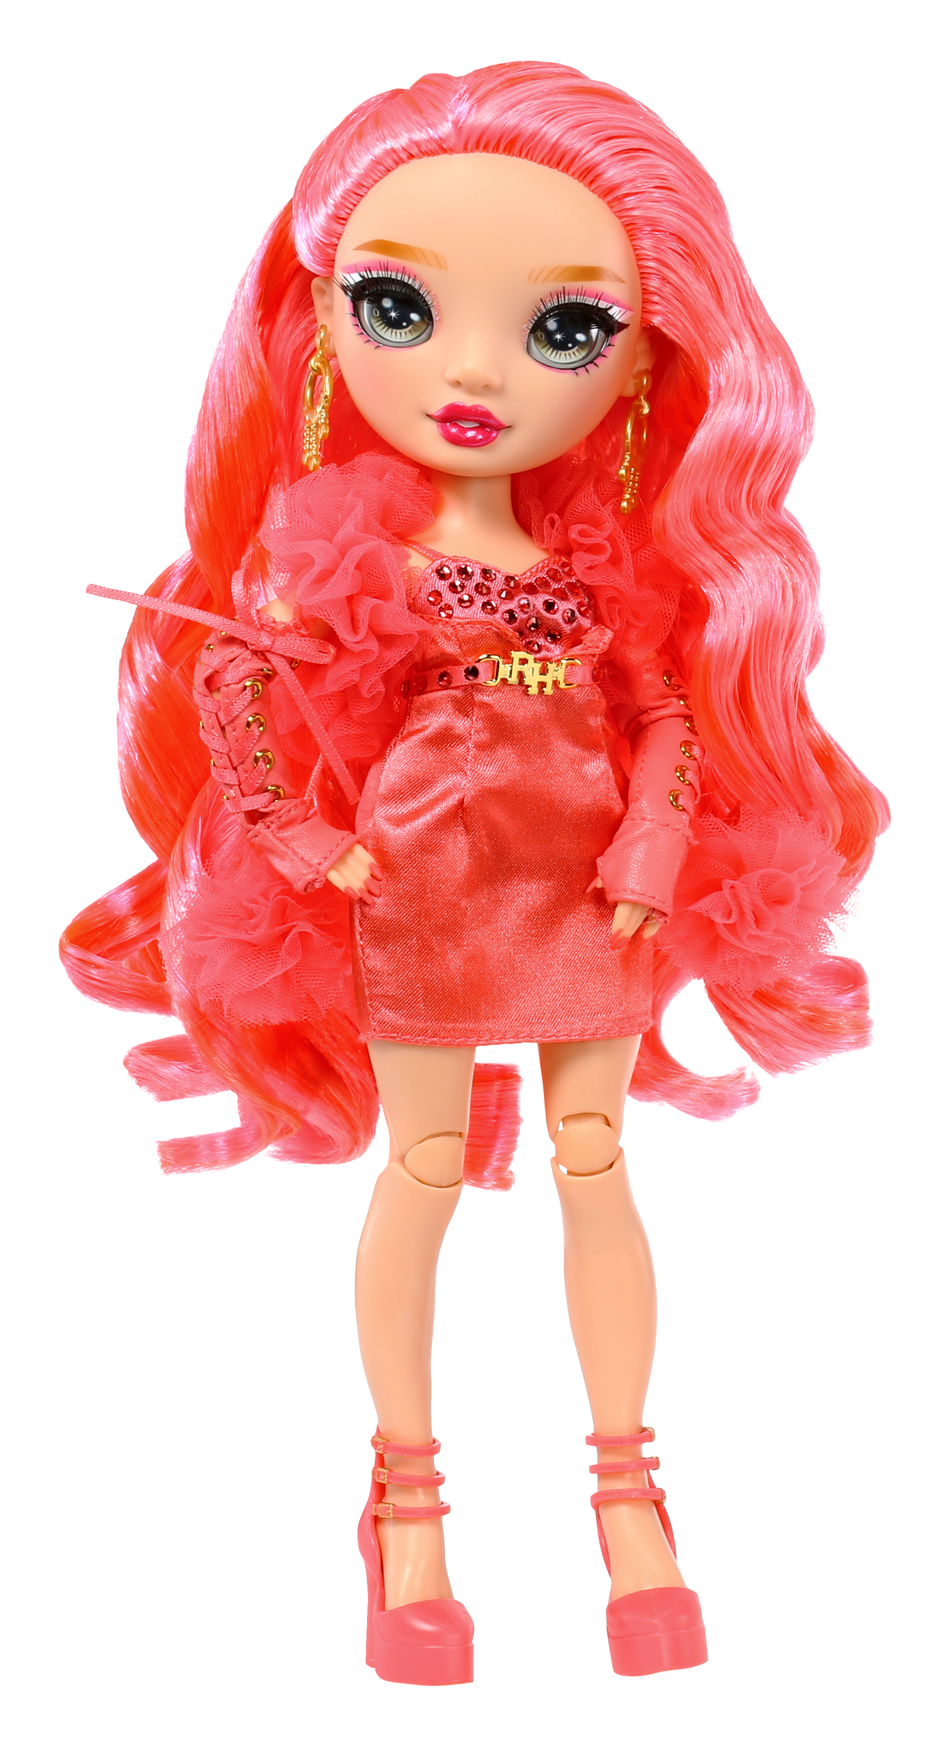 Rainbow high fashion doll serie 5: priscilla perez. bambola rosa con vestito alla moda e oltre 10 accessori di gioco colorati - Rainbow High